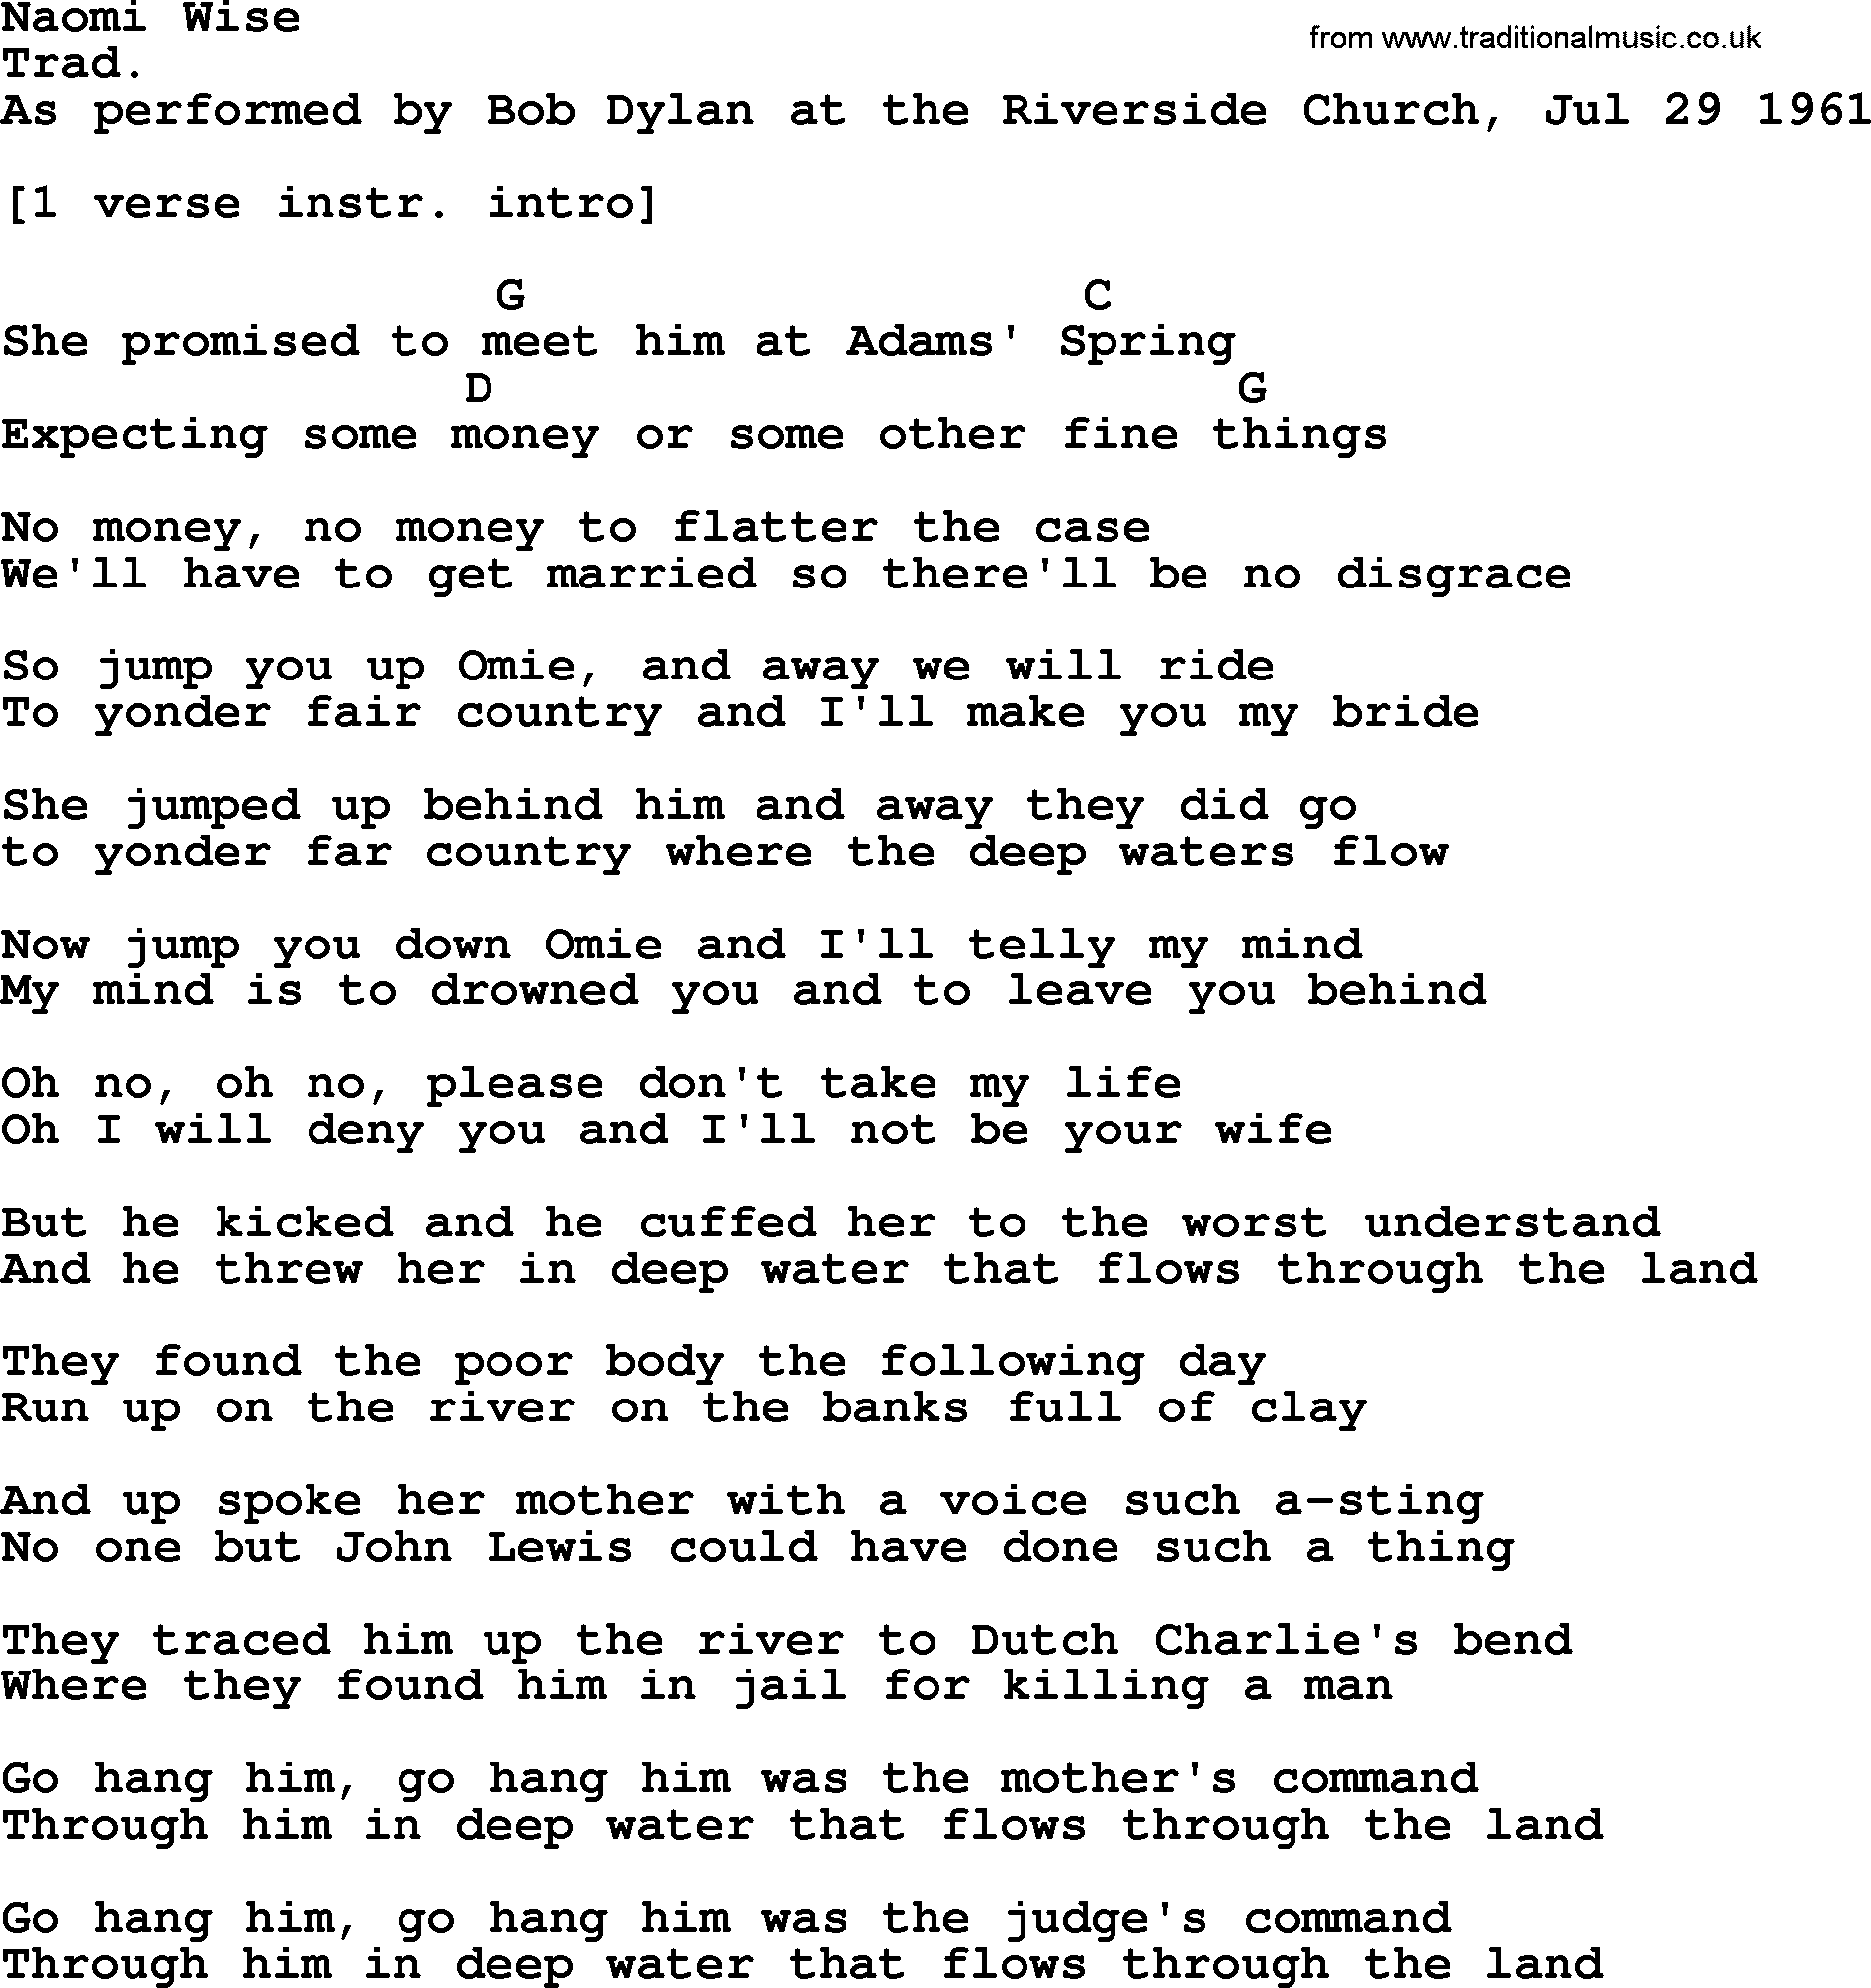 Bob Dylan song, lyrics with chords - Naomi Wise